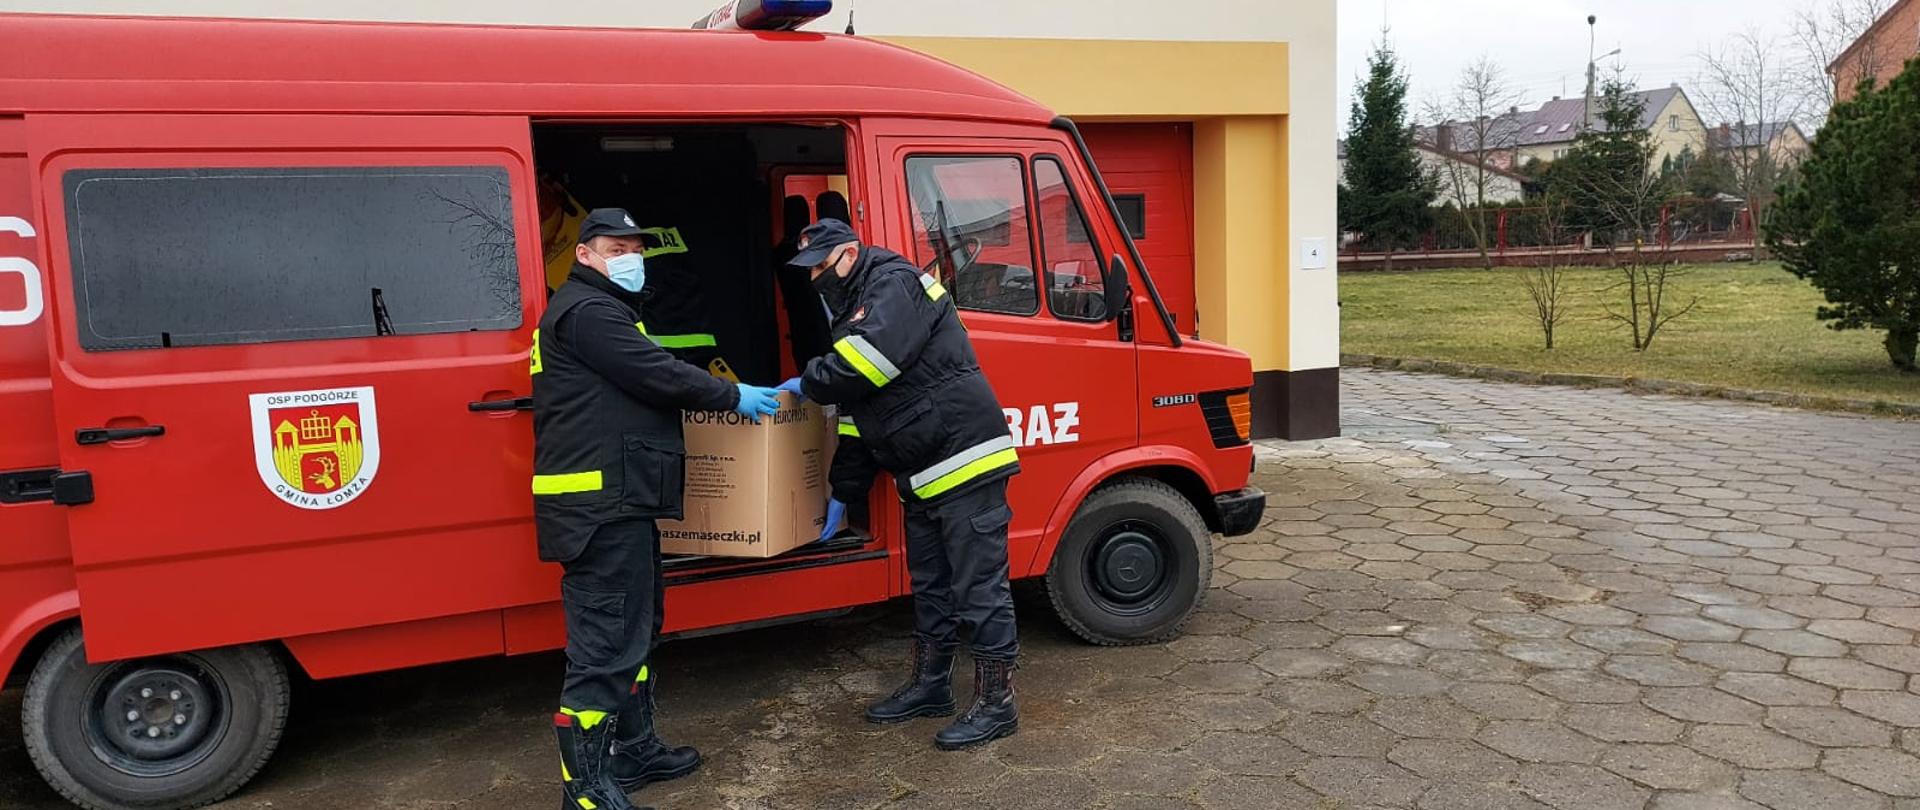 dwóch strażaków pakuje maseczki ochronne do samochodu strażackiego